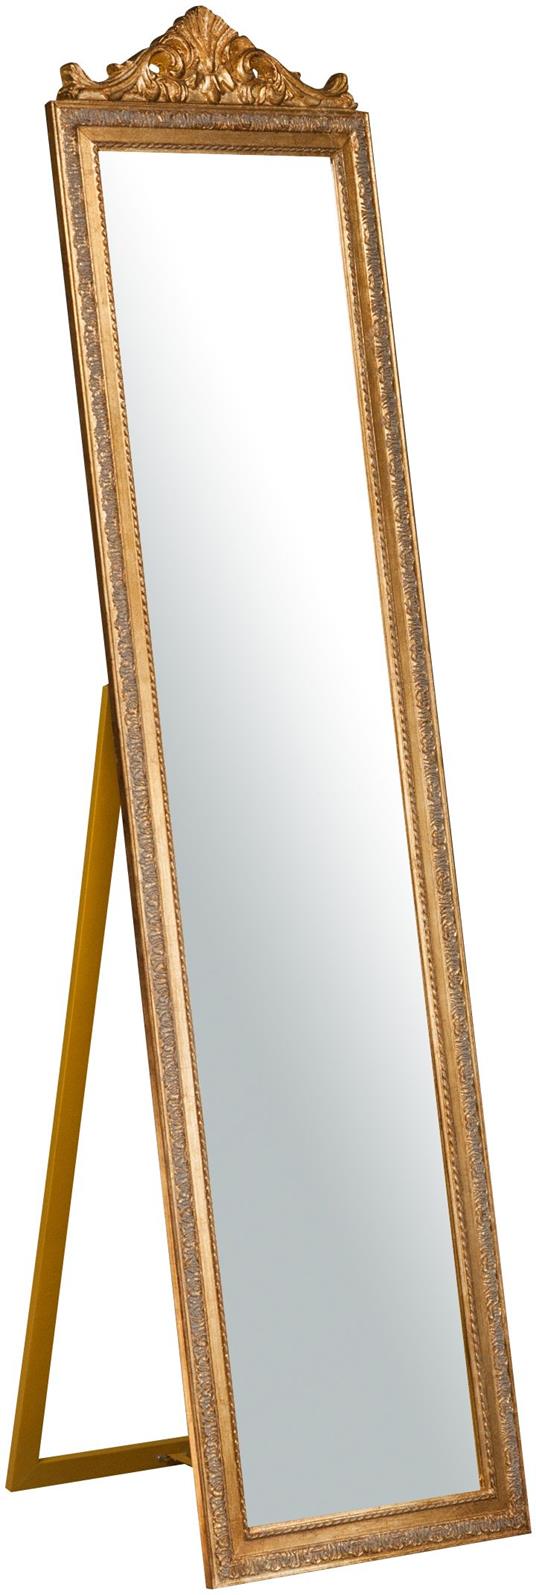 Specchio Specchiera Da Terra a Pavimento L43xPR3xH178 cm finitura oro  anticato. - Biscottini - Idee regalo | IBS